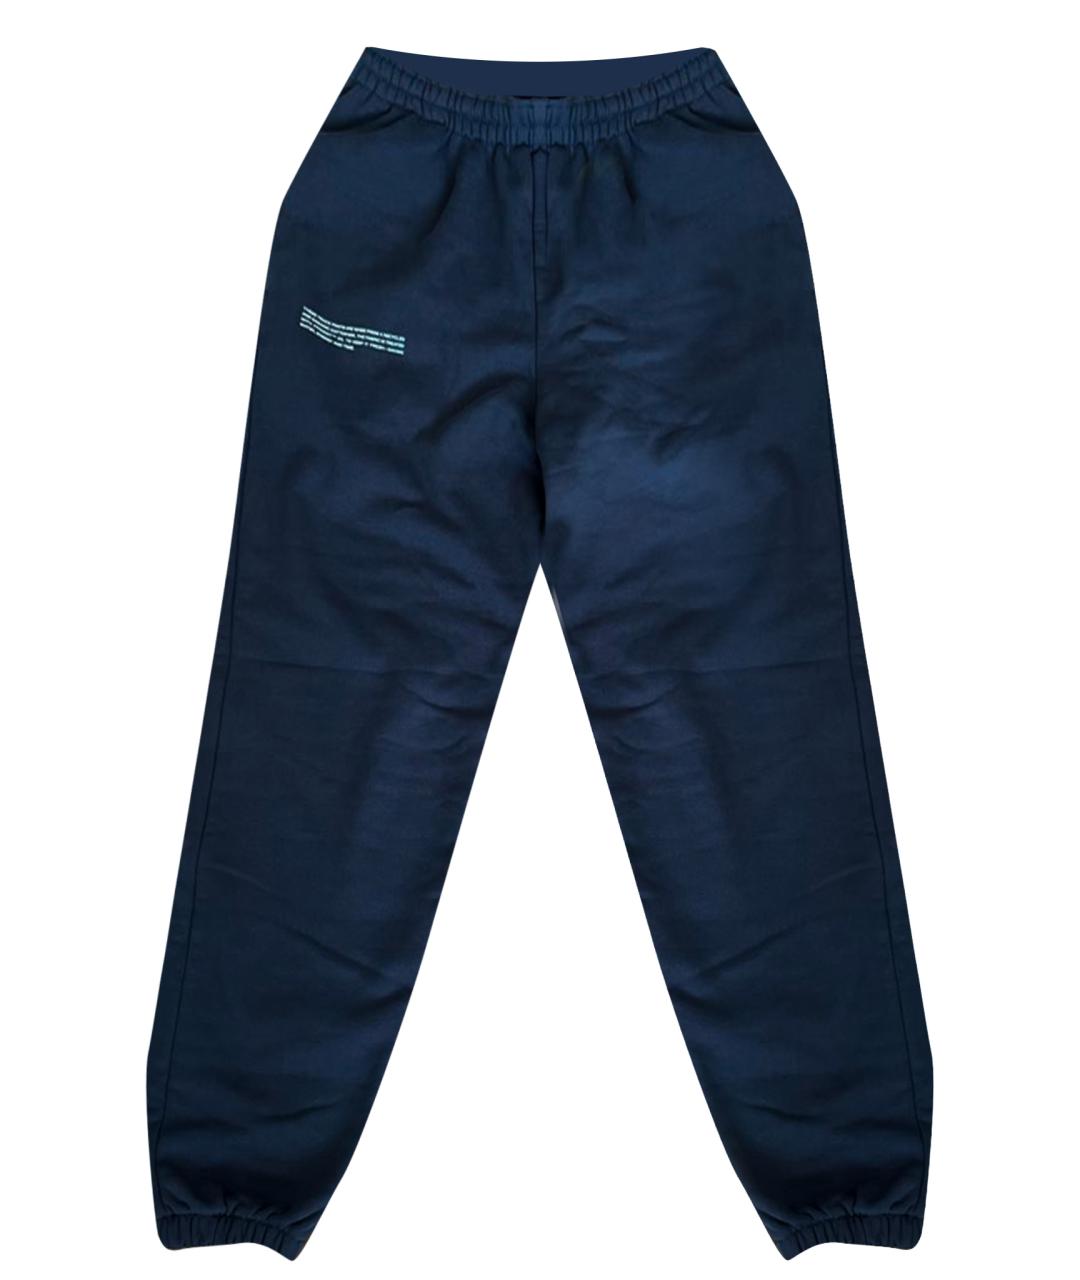 THE PANGAIA Темно-синие хлопковые спортивные брюки и шорты, фото 1